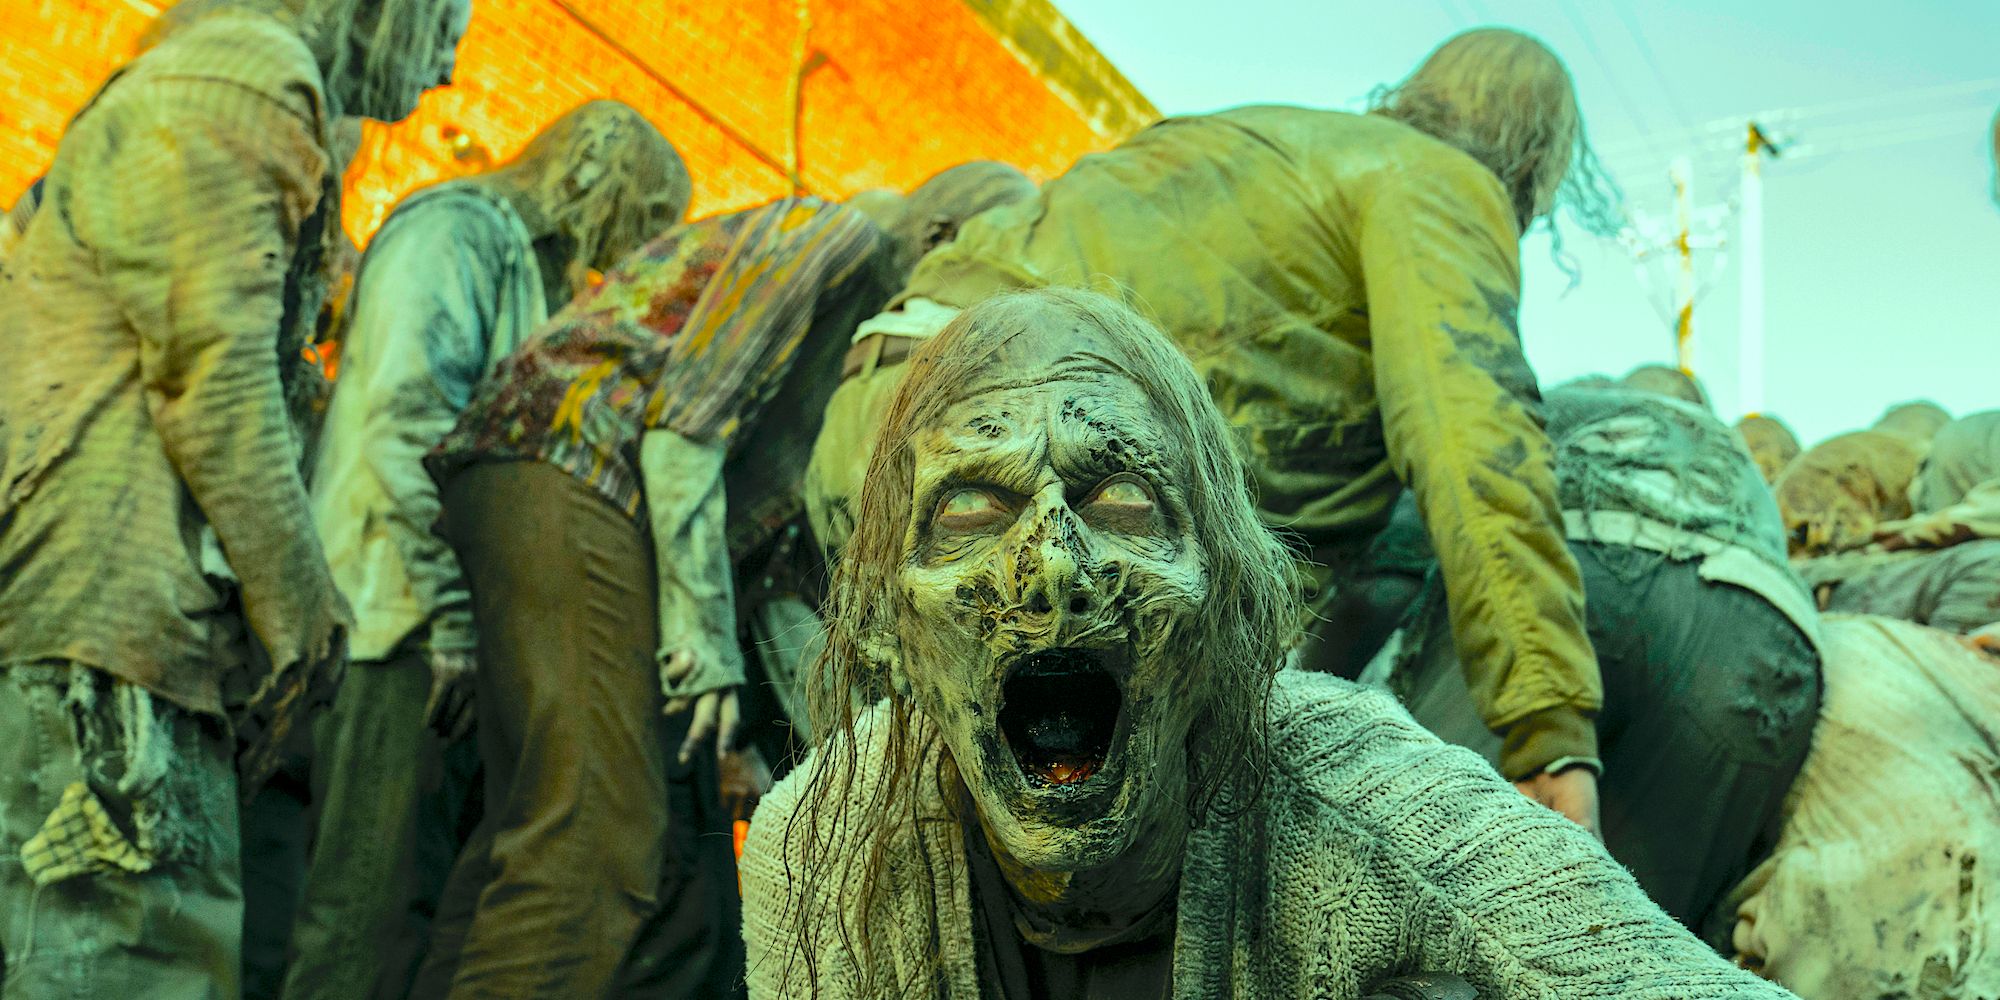 Zombies as seen in The Walking Dead series finale